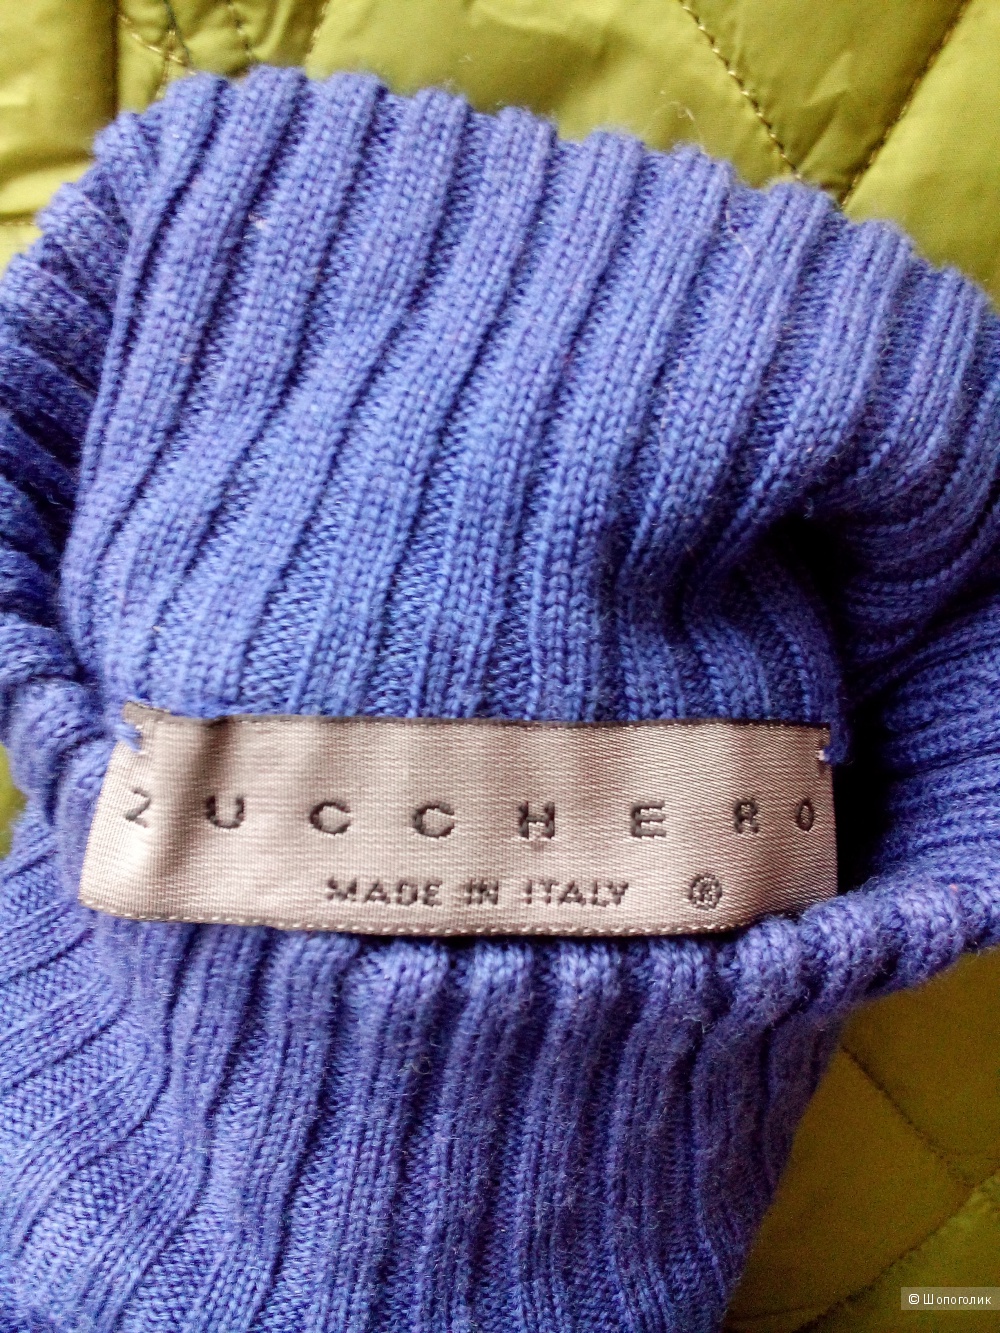 Пуловер ZUCCHERO  размер 38.